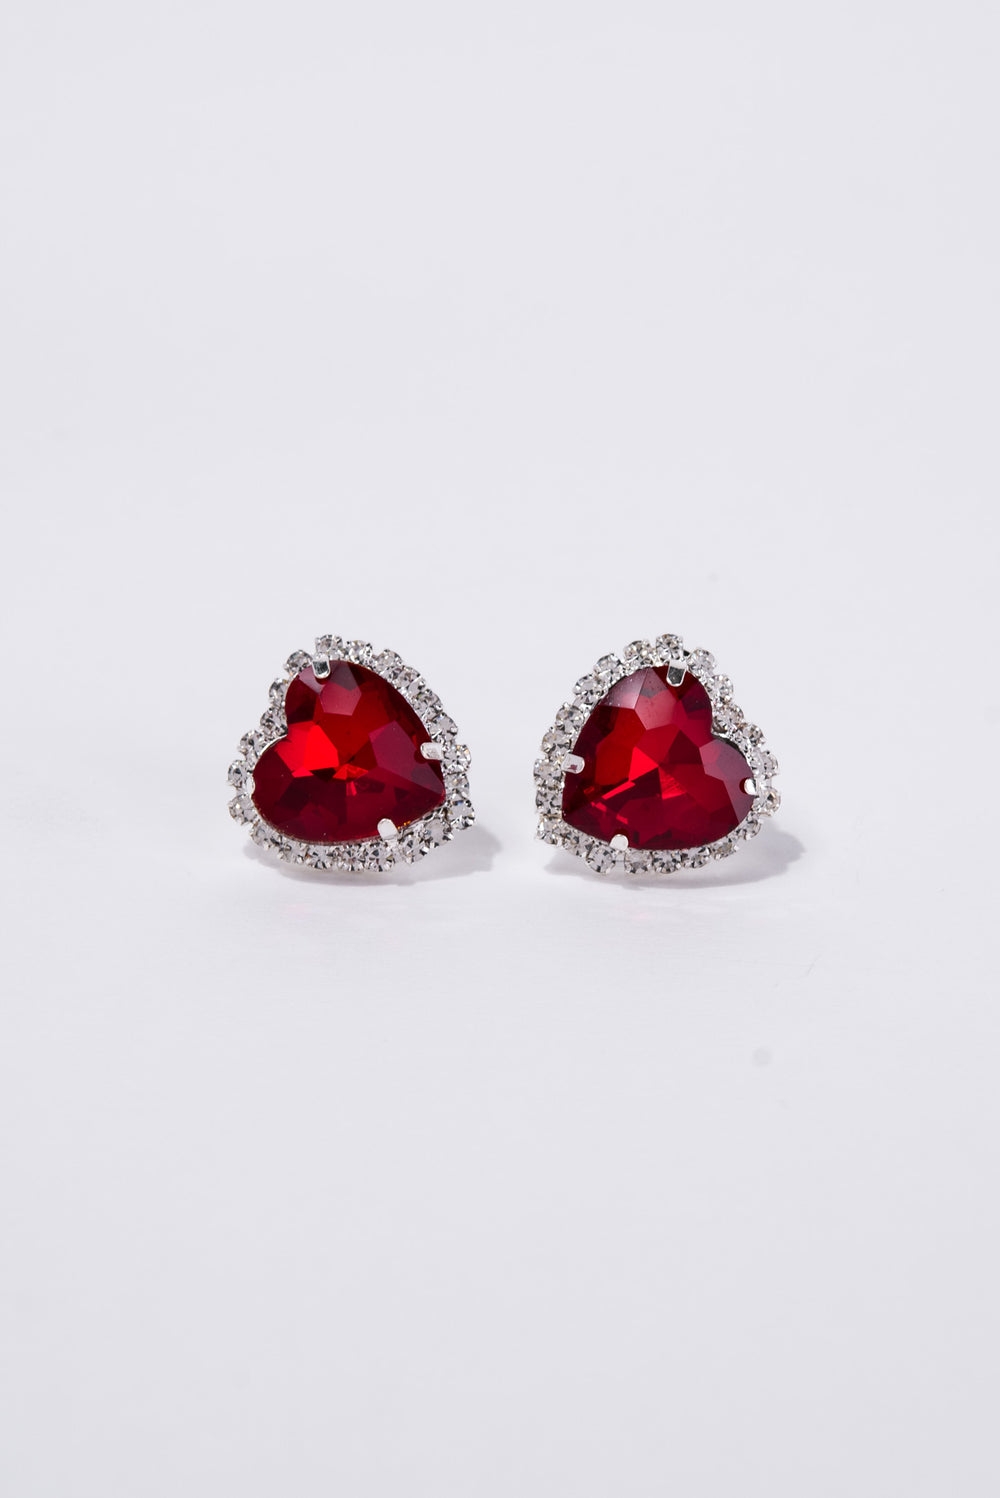 Rosalie Valentine's Day Heart Gemstone Drop Earrings